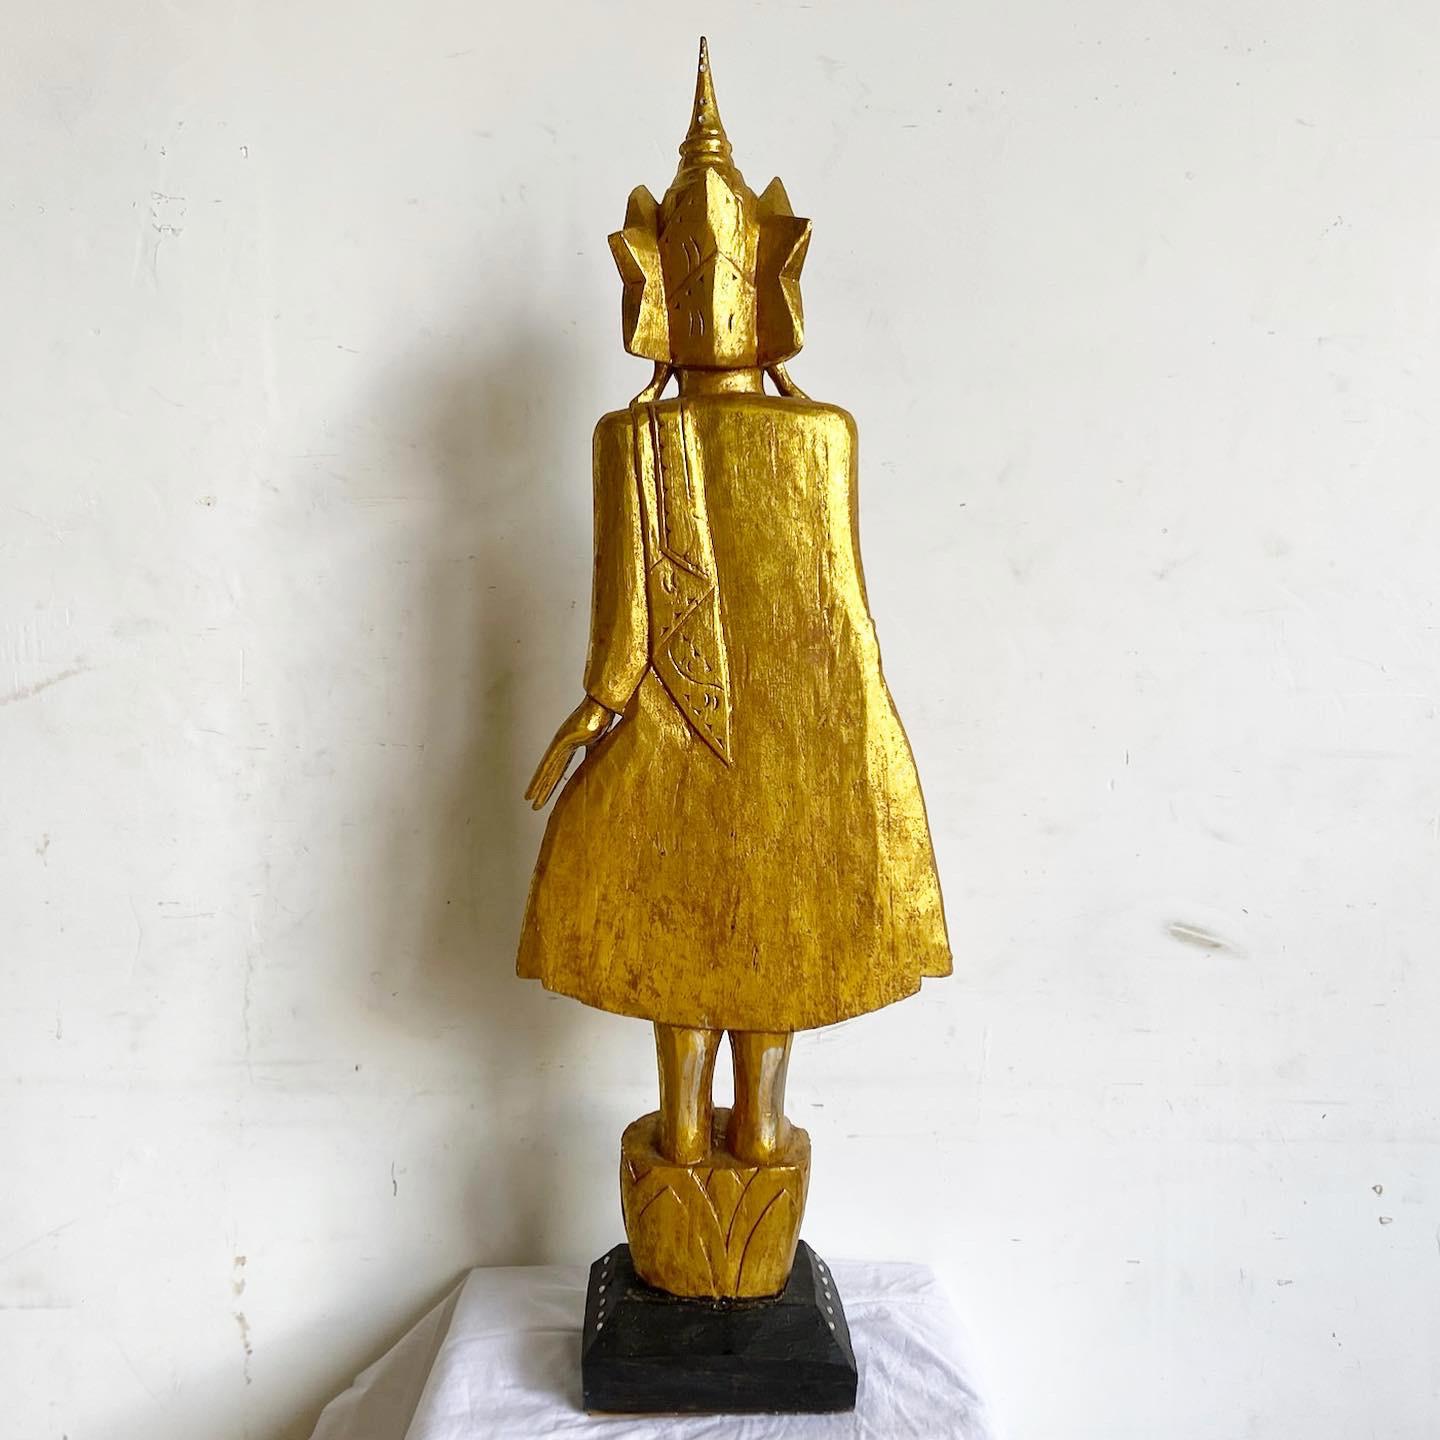 Faites l'expérience de la sérénité et de l'opulence avec cette sculpture en bois doré de Bouddha. Méticuleusement sculpté à la main, ce chef-d'œuvre asiatique est orné d'une finition dorée rayonnante, capturant l'essence de la tranquillité de